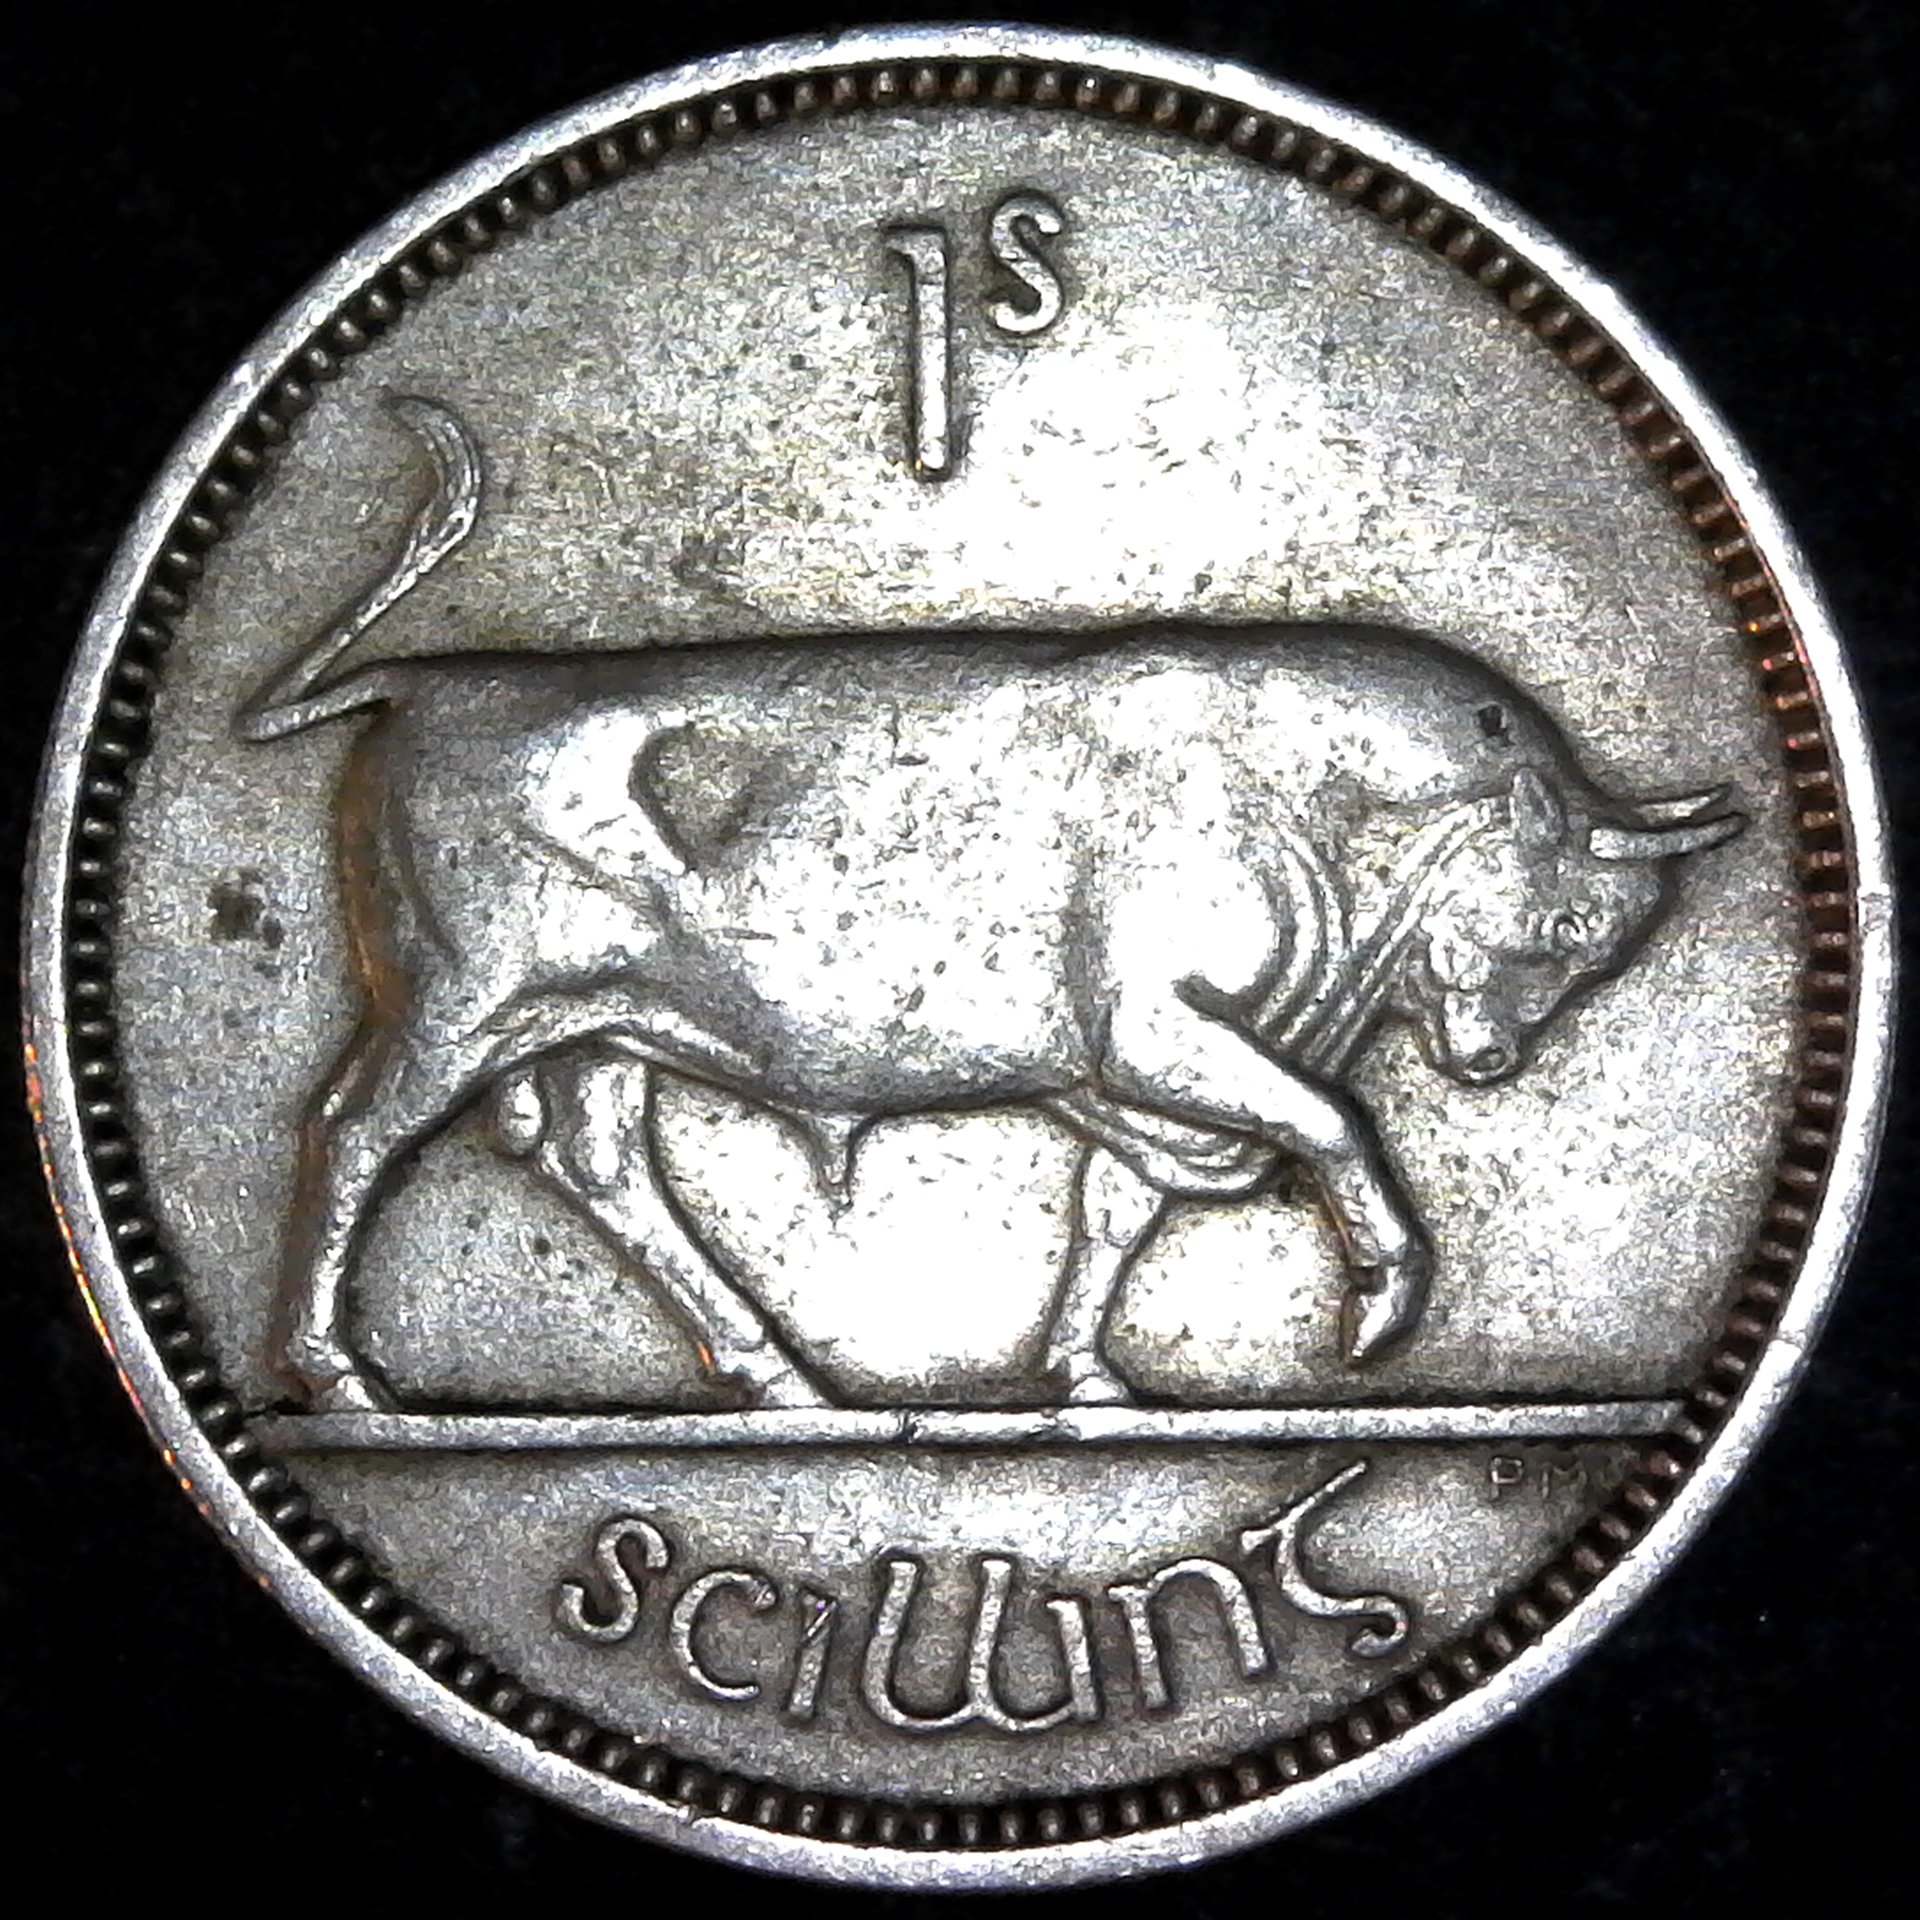 Ireland Shilling 1951 obv.jpg